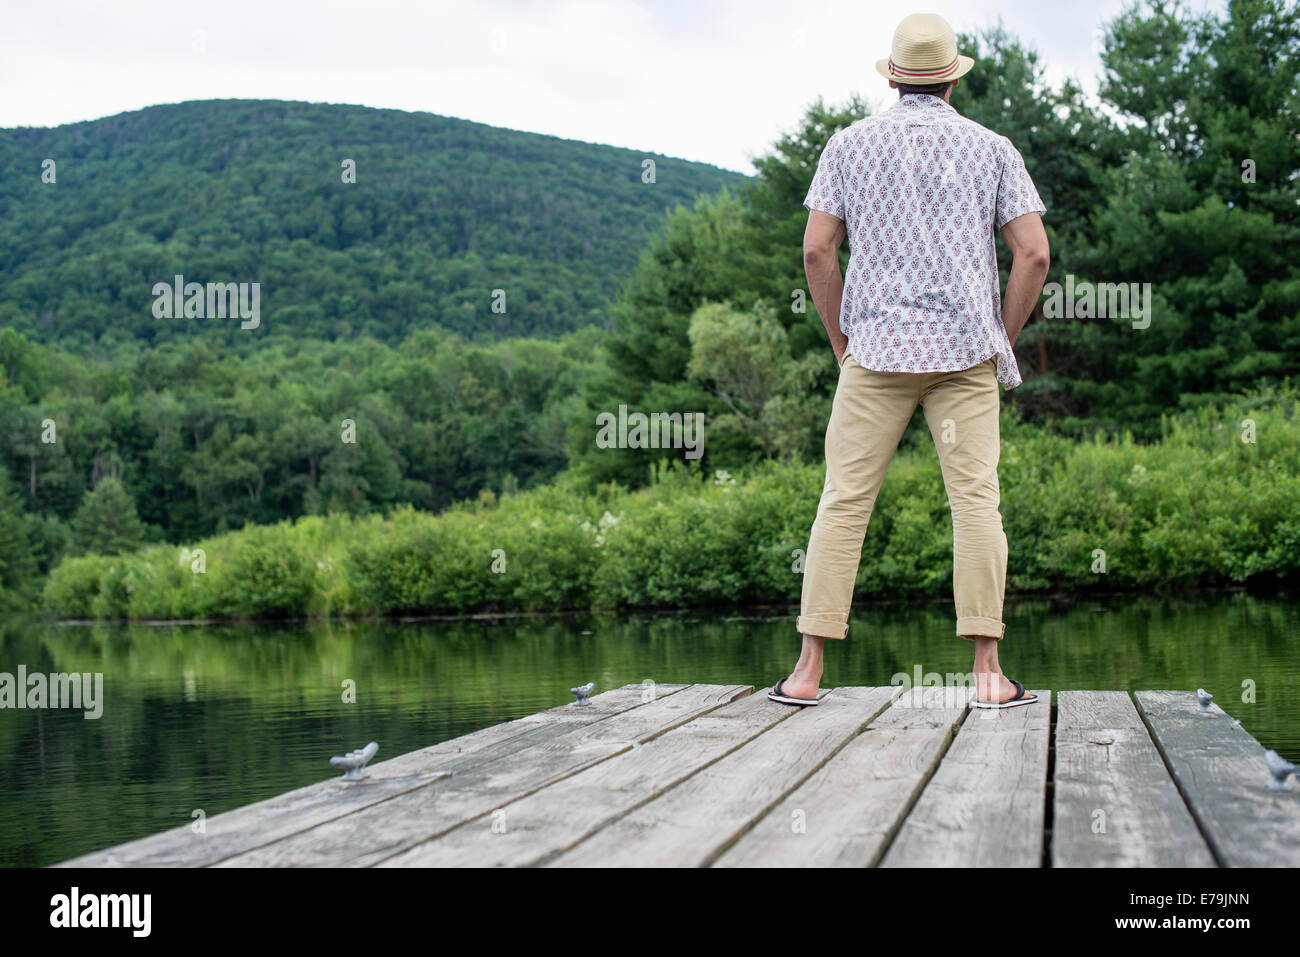 Un homme debout sur une jetée en bois donnant sur un lac calme. Banque D'Images